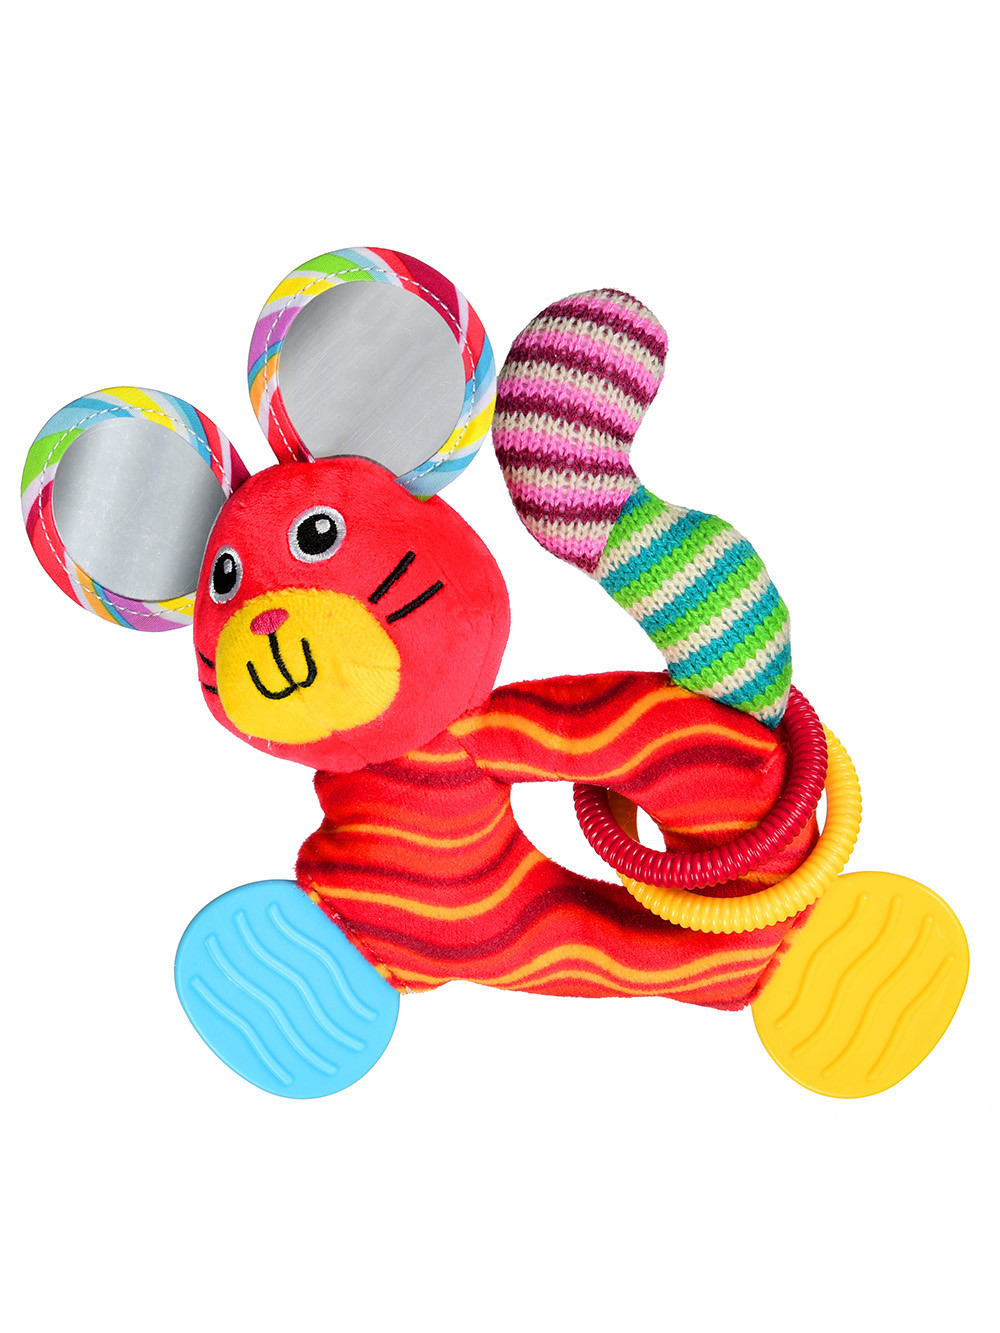 Мягкая игрушка с прорезывателем и погремушкой Bright friend (мышка)